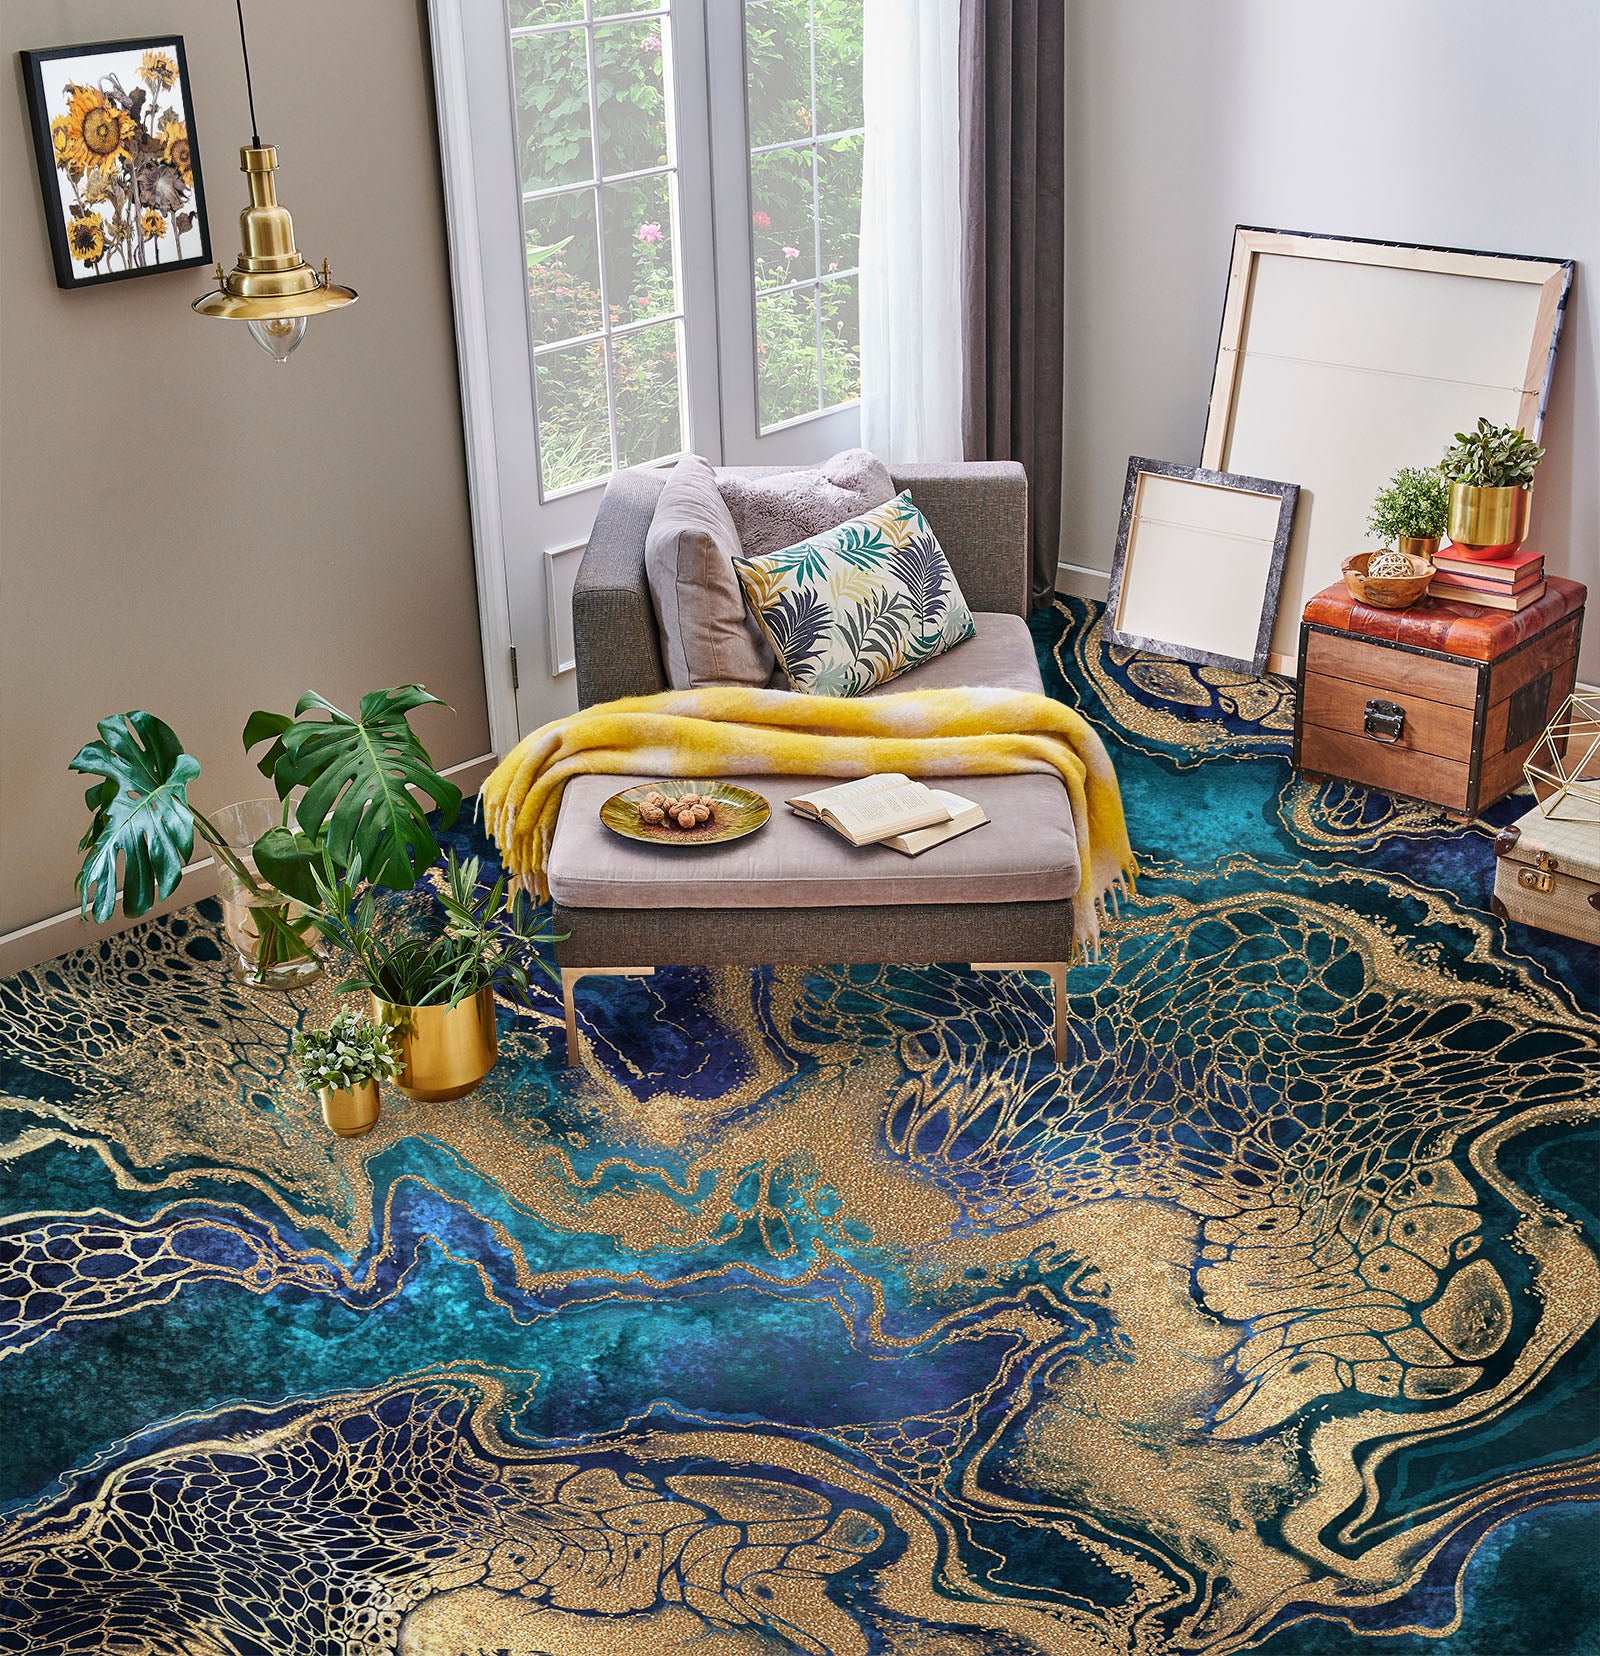 3D Two-color Story Art 580 Floor Mural  Wallpaper Murals Rug & Mat Print Epoxy waterproof bath floor